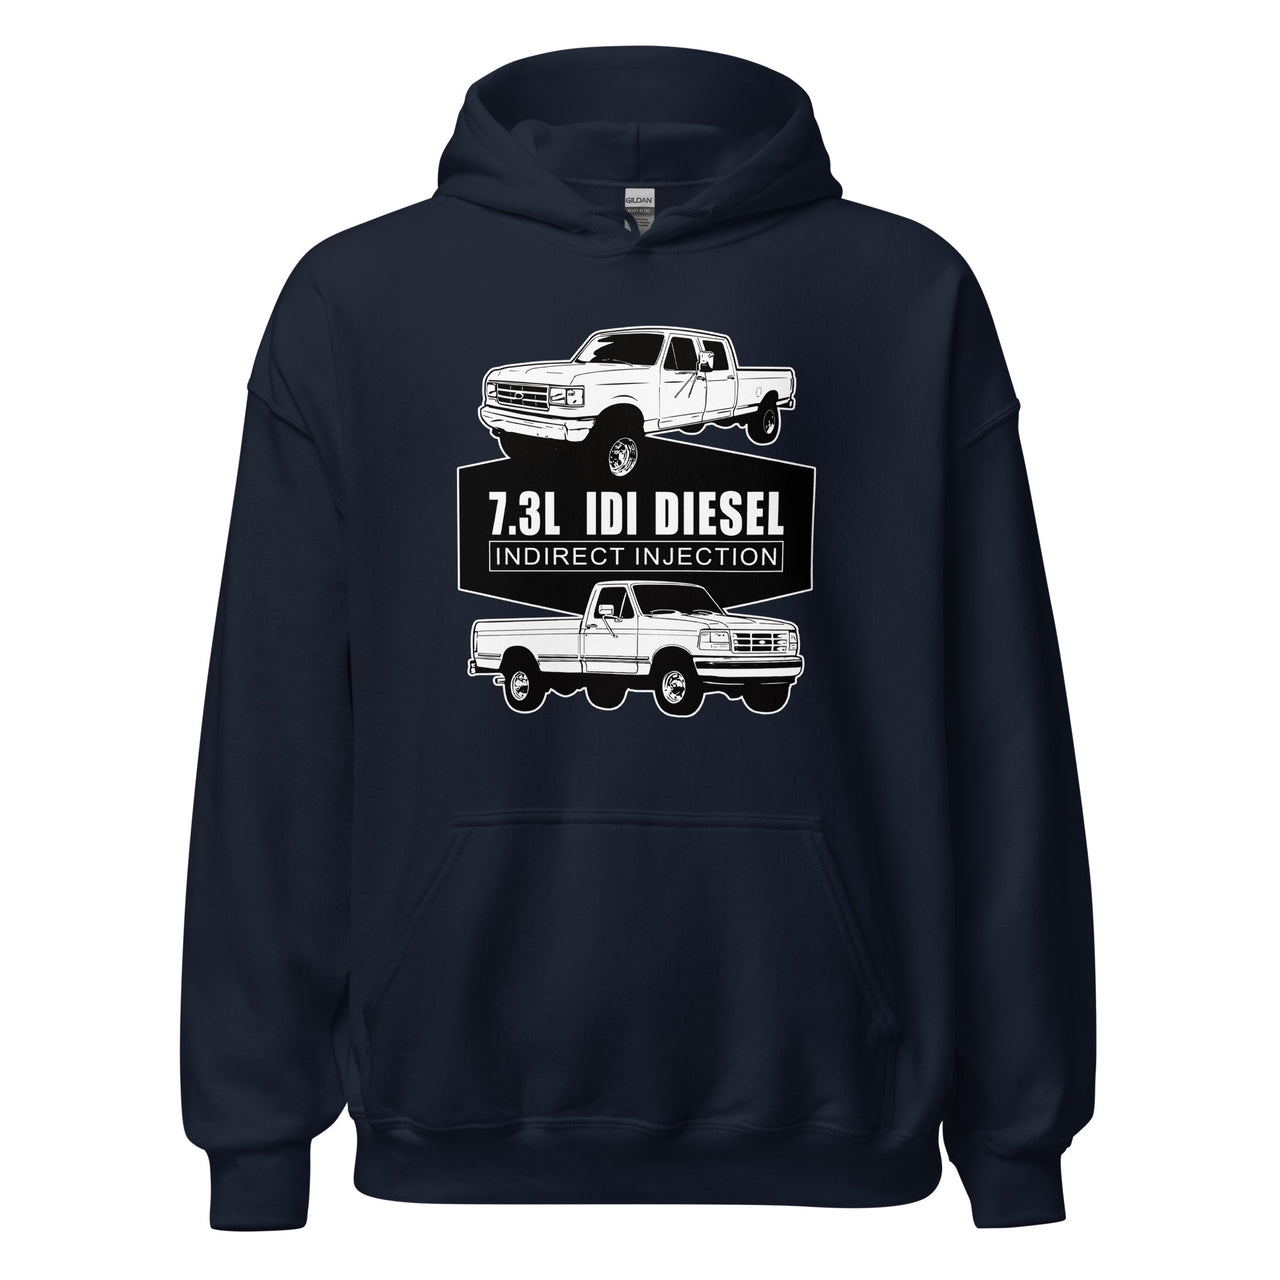 73 idi diesel truck hoodie in navy